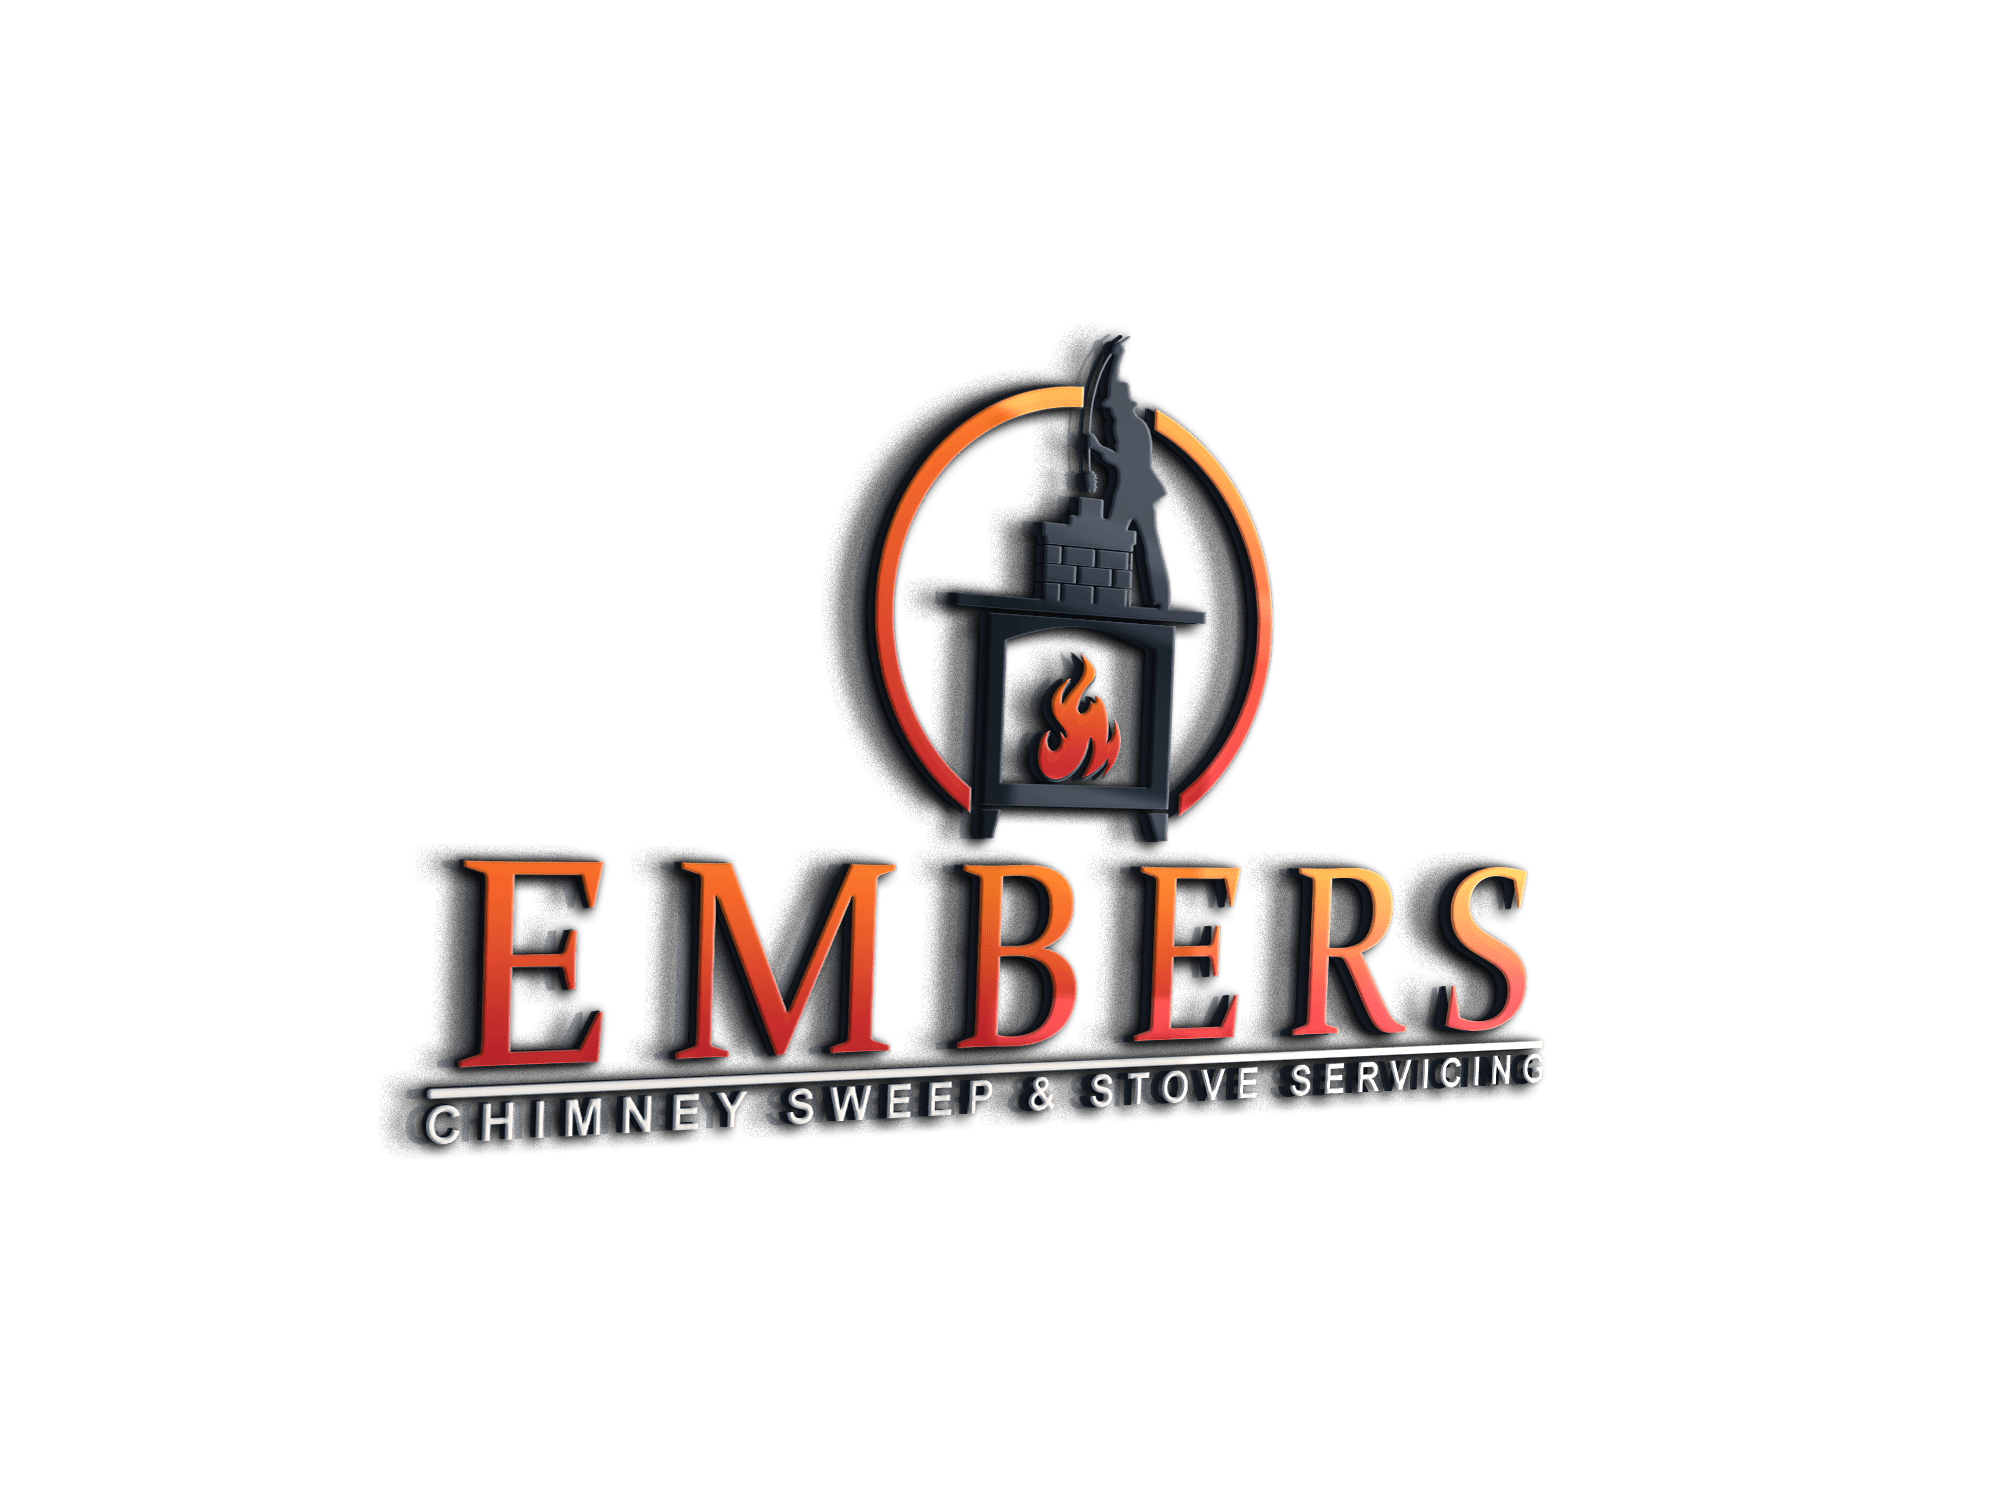 Embers Chimney Sweep